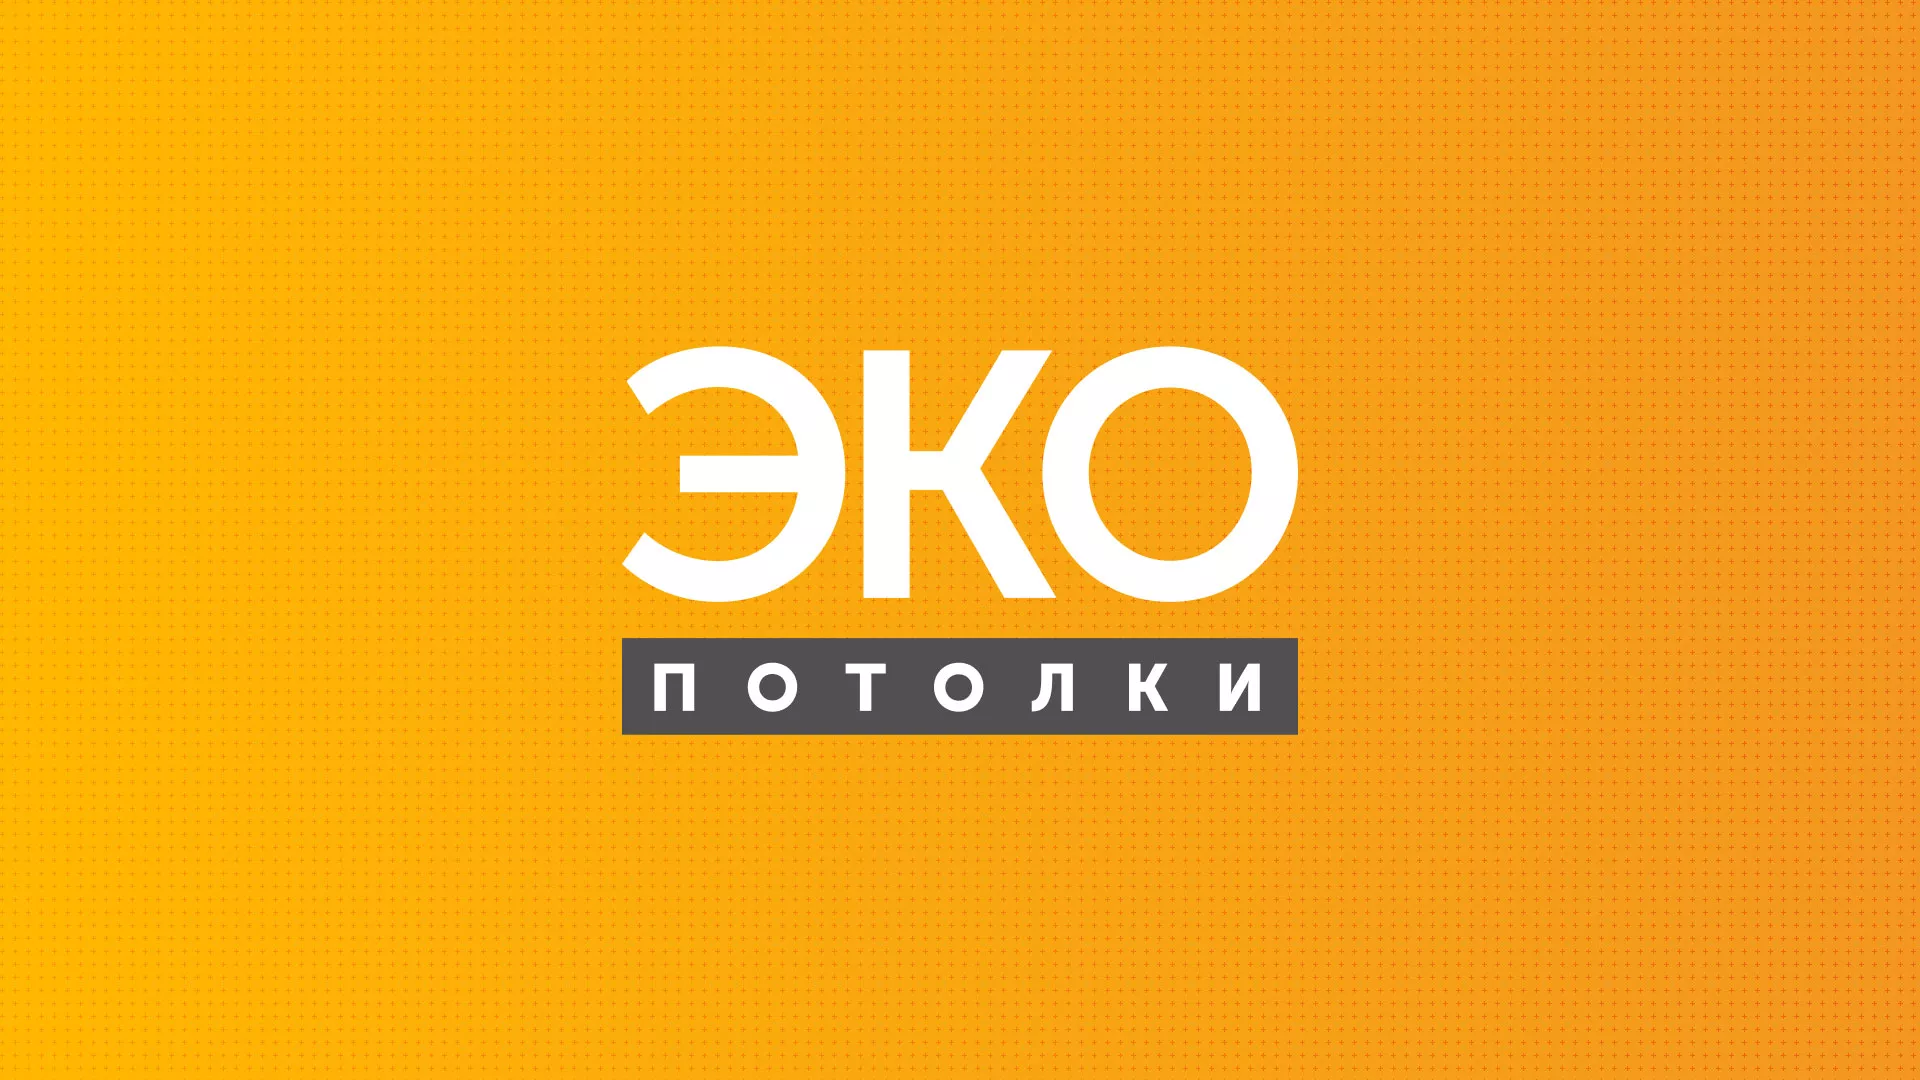 Разработка сайта по натяжным потолкам «Эко Потолки» в Московском